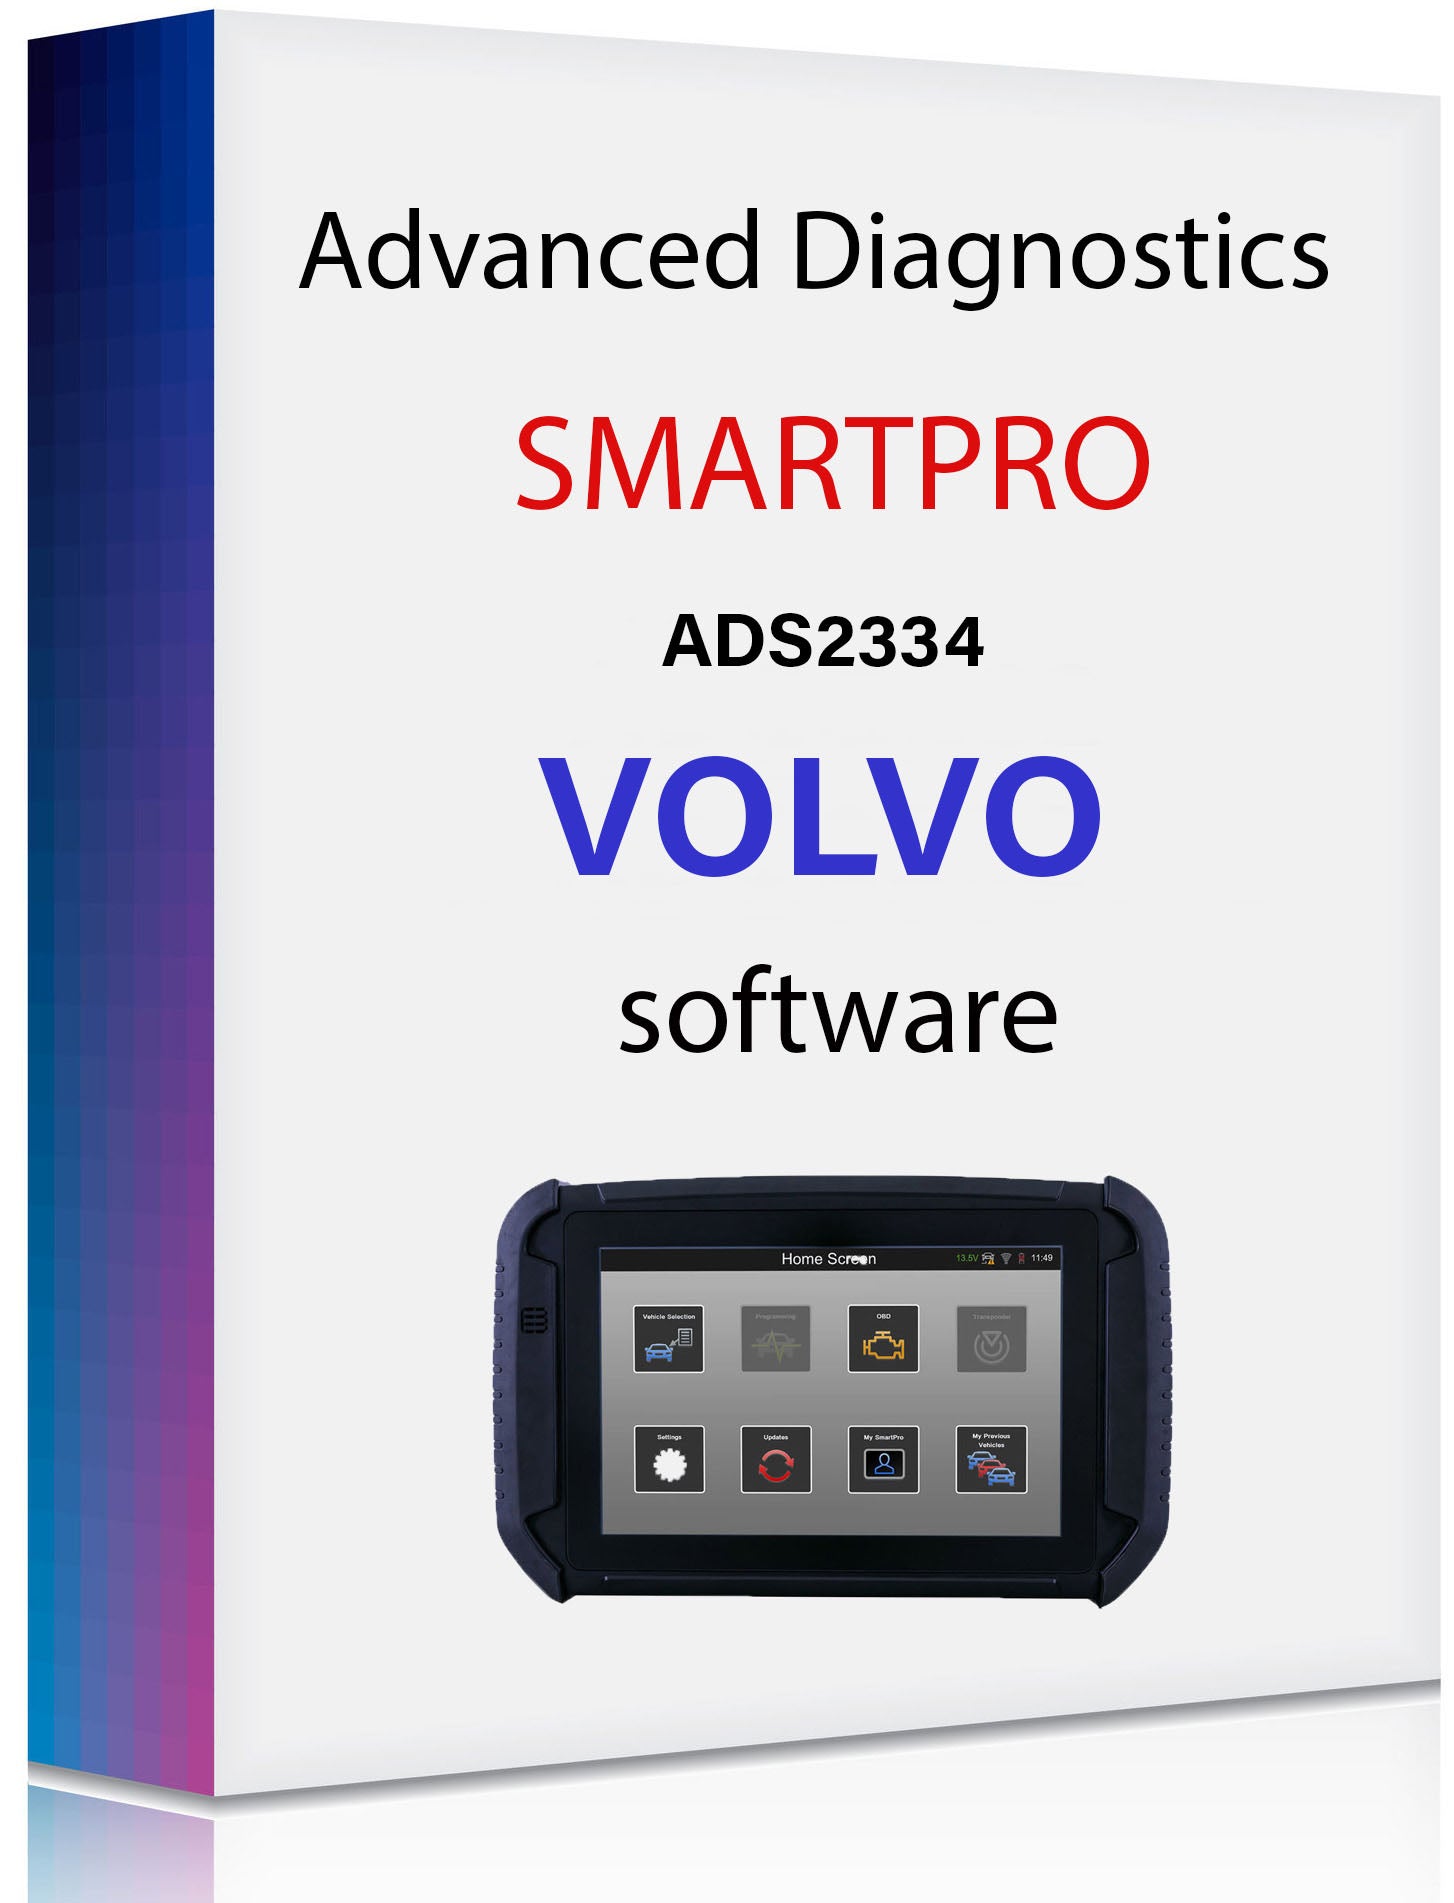 SmartPro Software - Volvo - ADS2334 - D756919AD - ILCO Smart Pro - Advanced Diagnostics